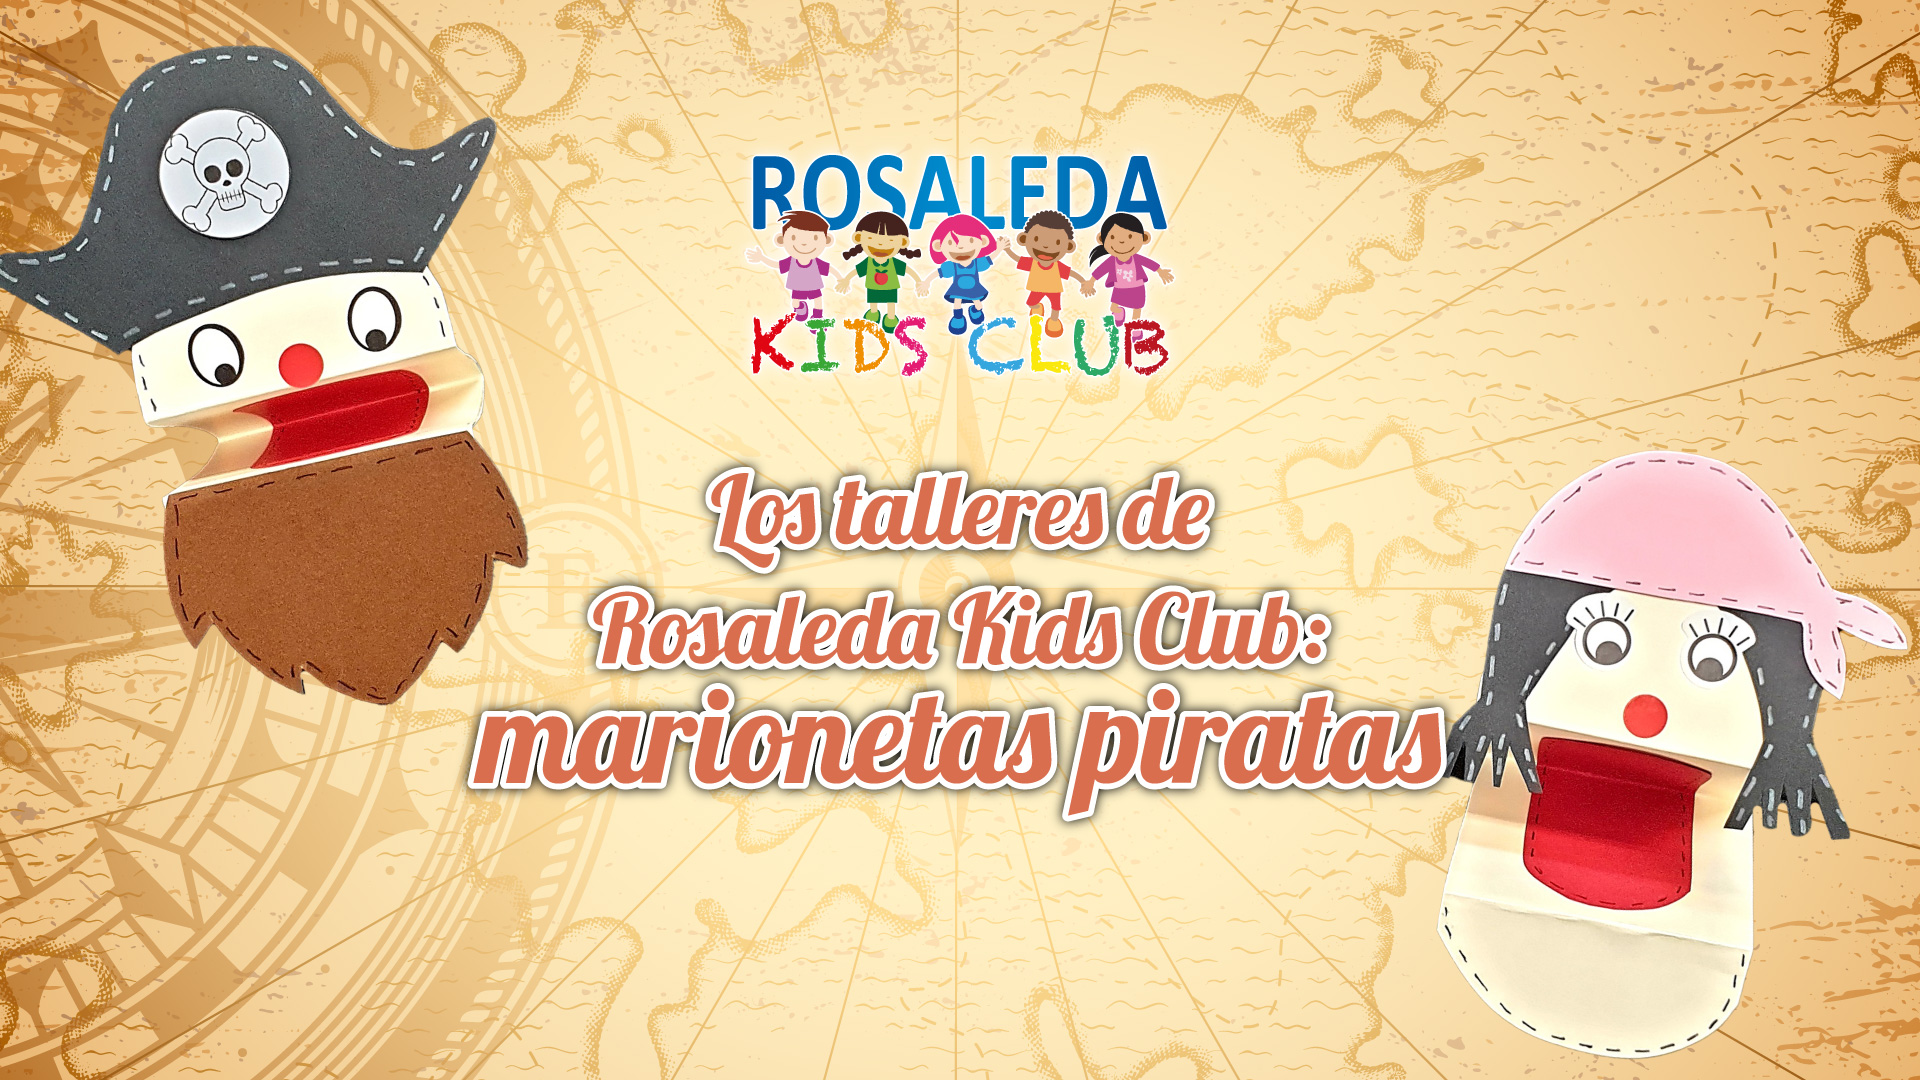 Los talleres de Rosaleda Kids Club: marionetas piratas